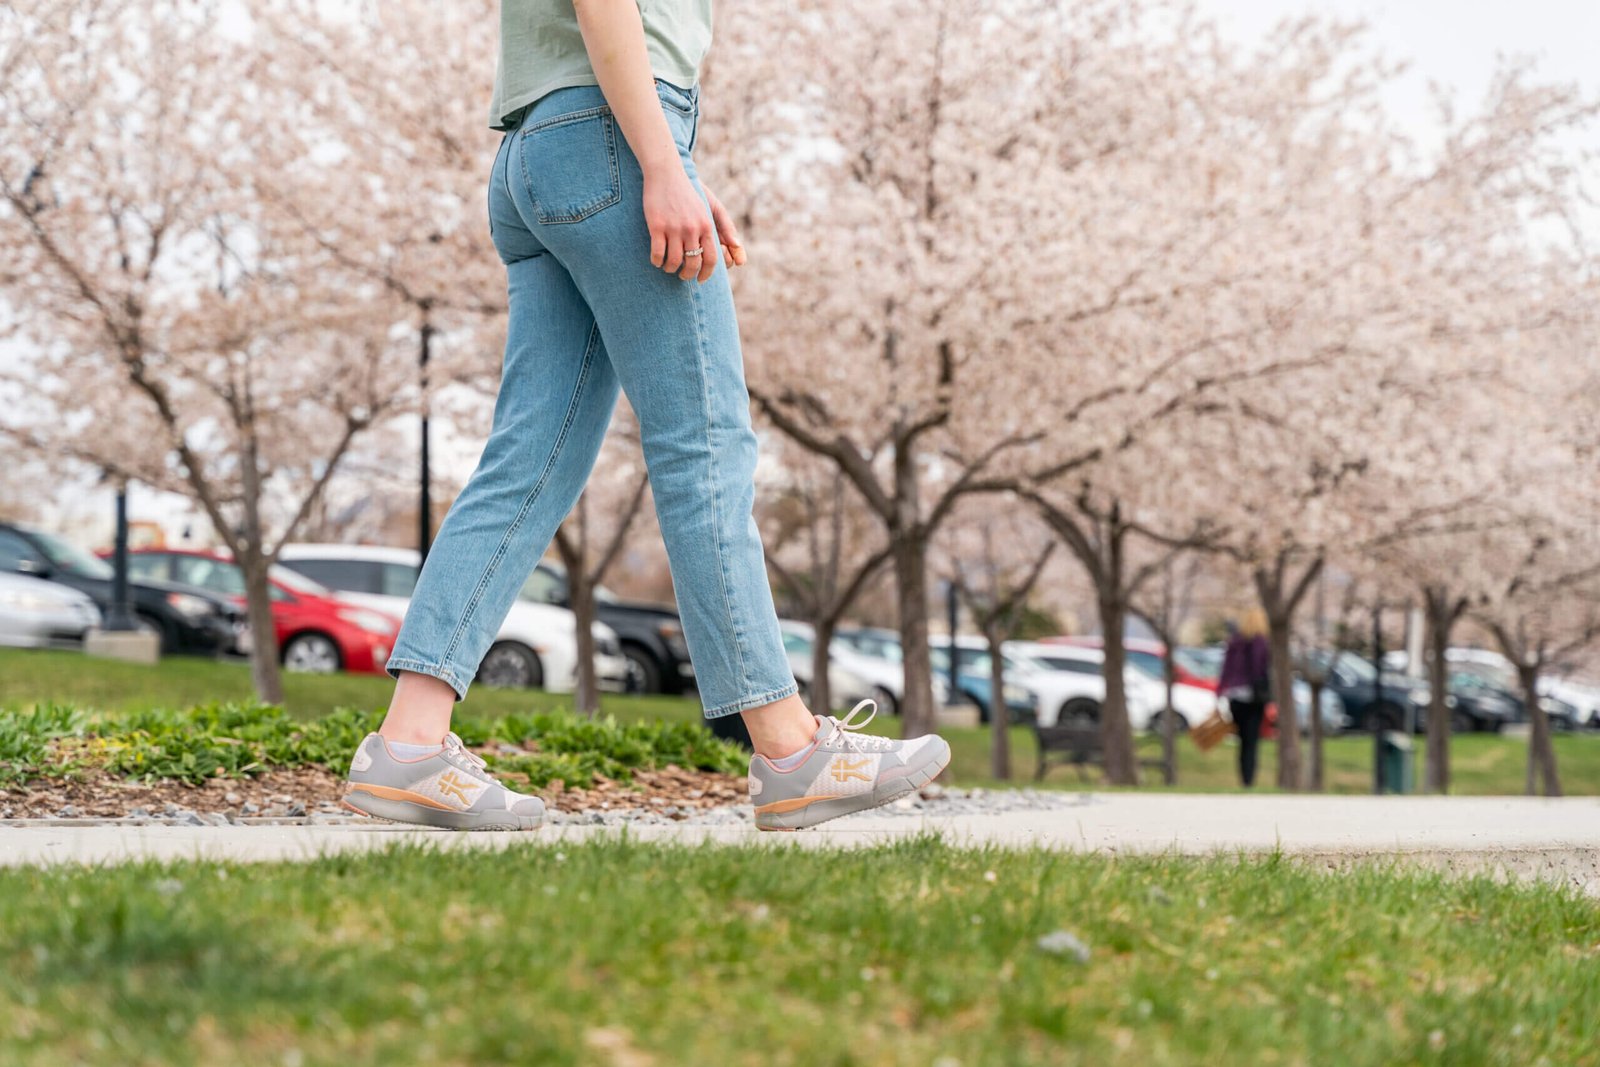 Woman walking through a park wearing KURU QUANTUM shoes for walking.